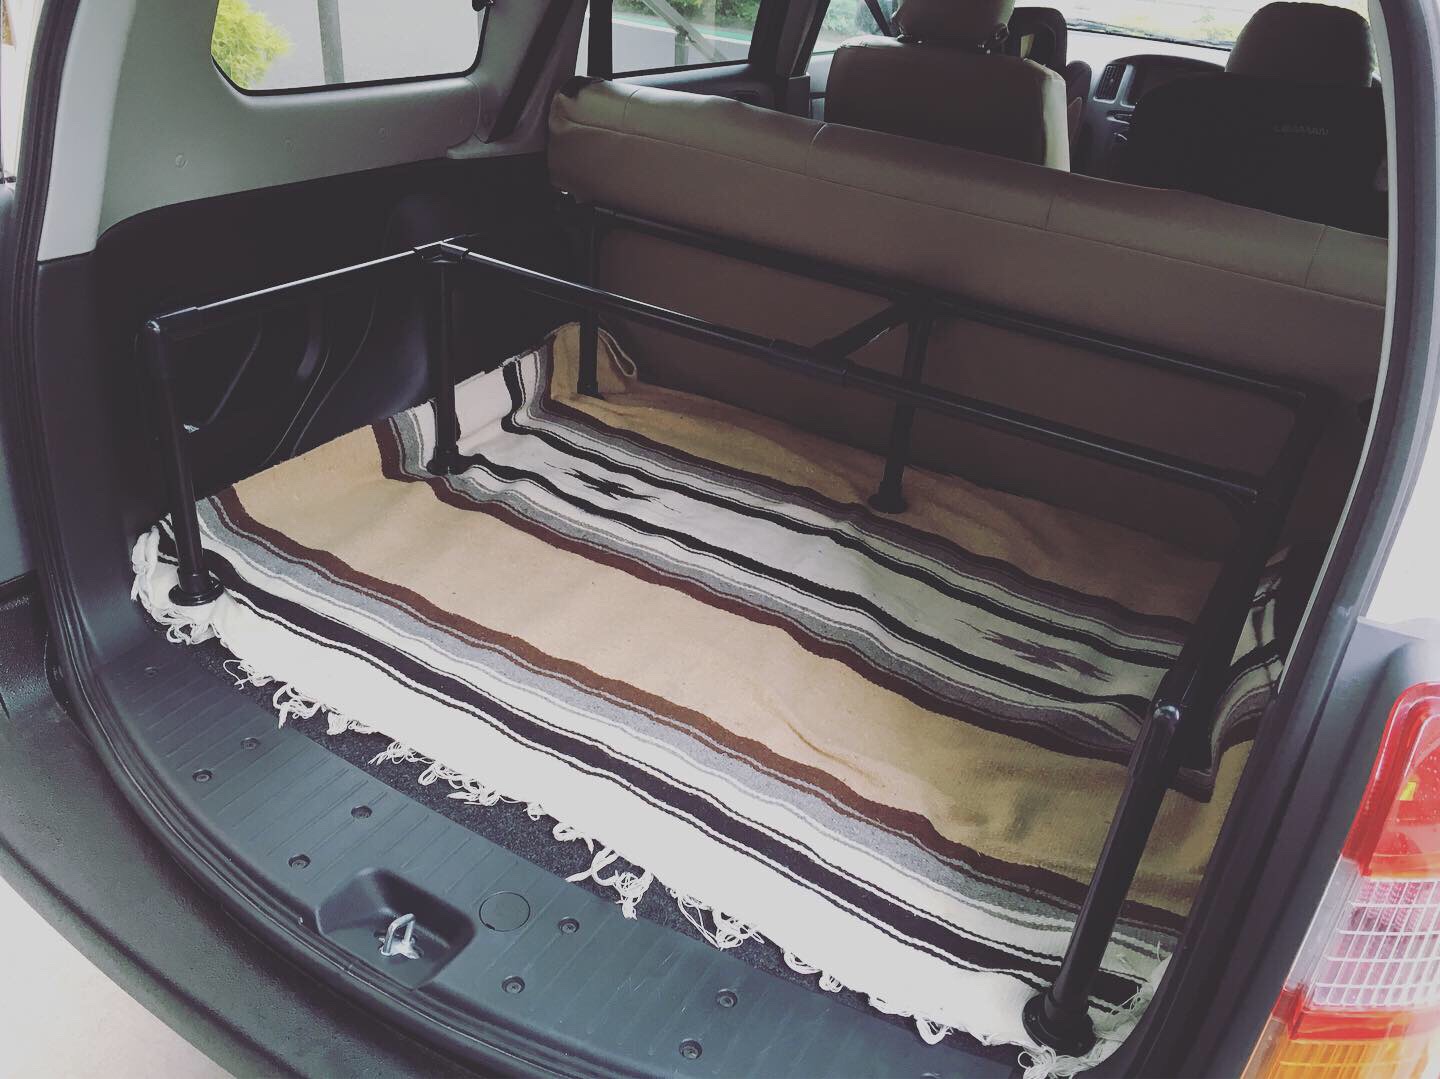 トヨタ サクシードバンを華麗にカスタム！by ukot (2019/11/09) 荷室に棚を作りました。まずはイレクターパイプを組んで